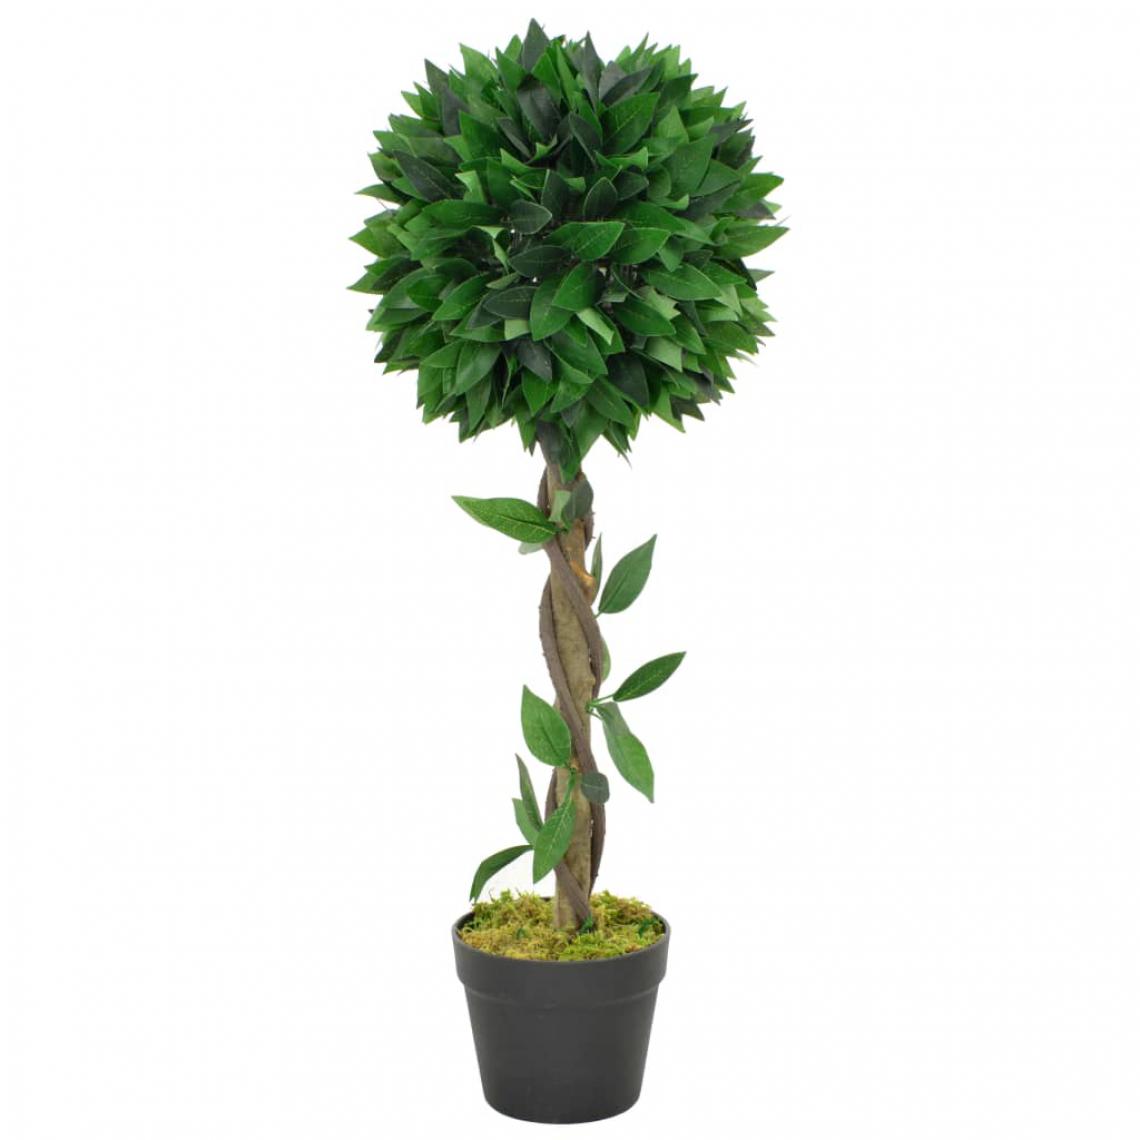 Decoshop26 - Plante artificielle laurier avec pot vert 70 cm décoration intérieur DEC022044 - Plantes et fleurs artificielles